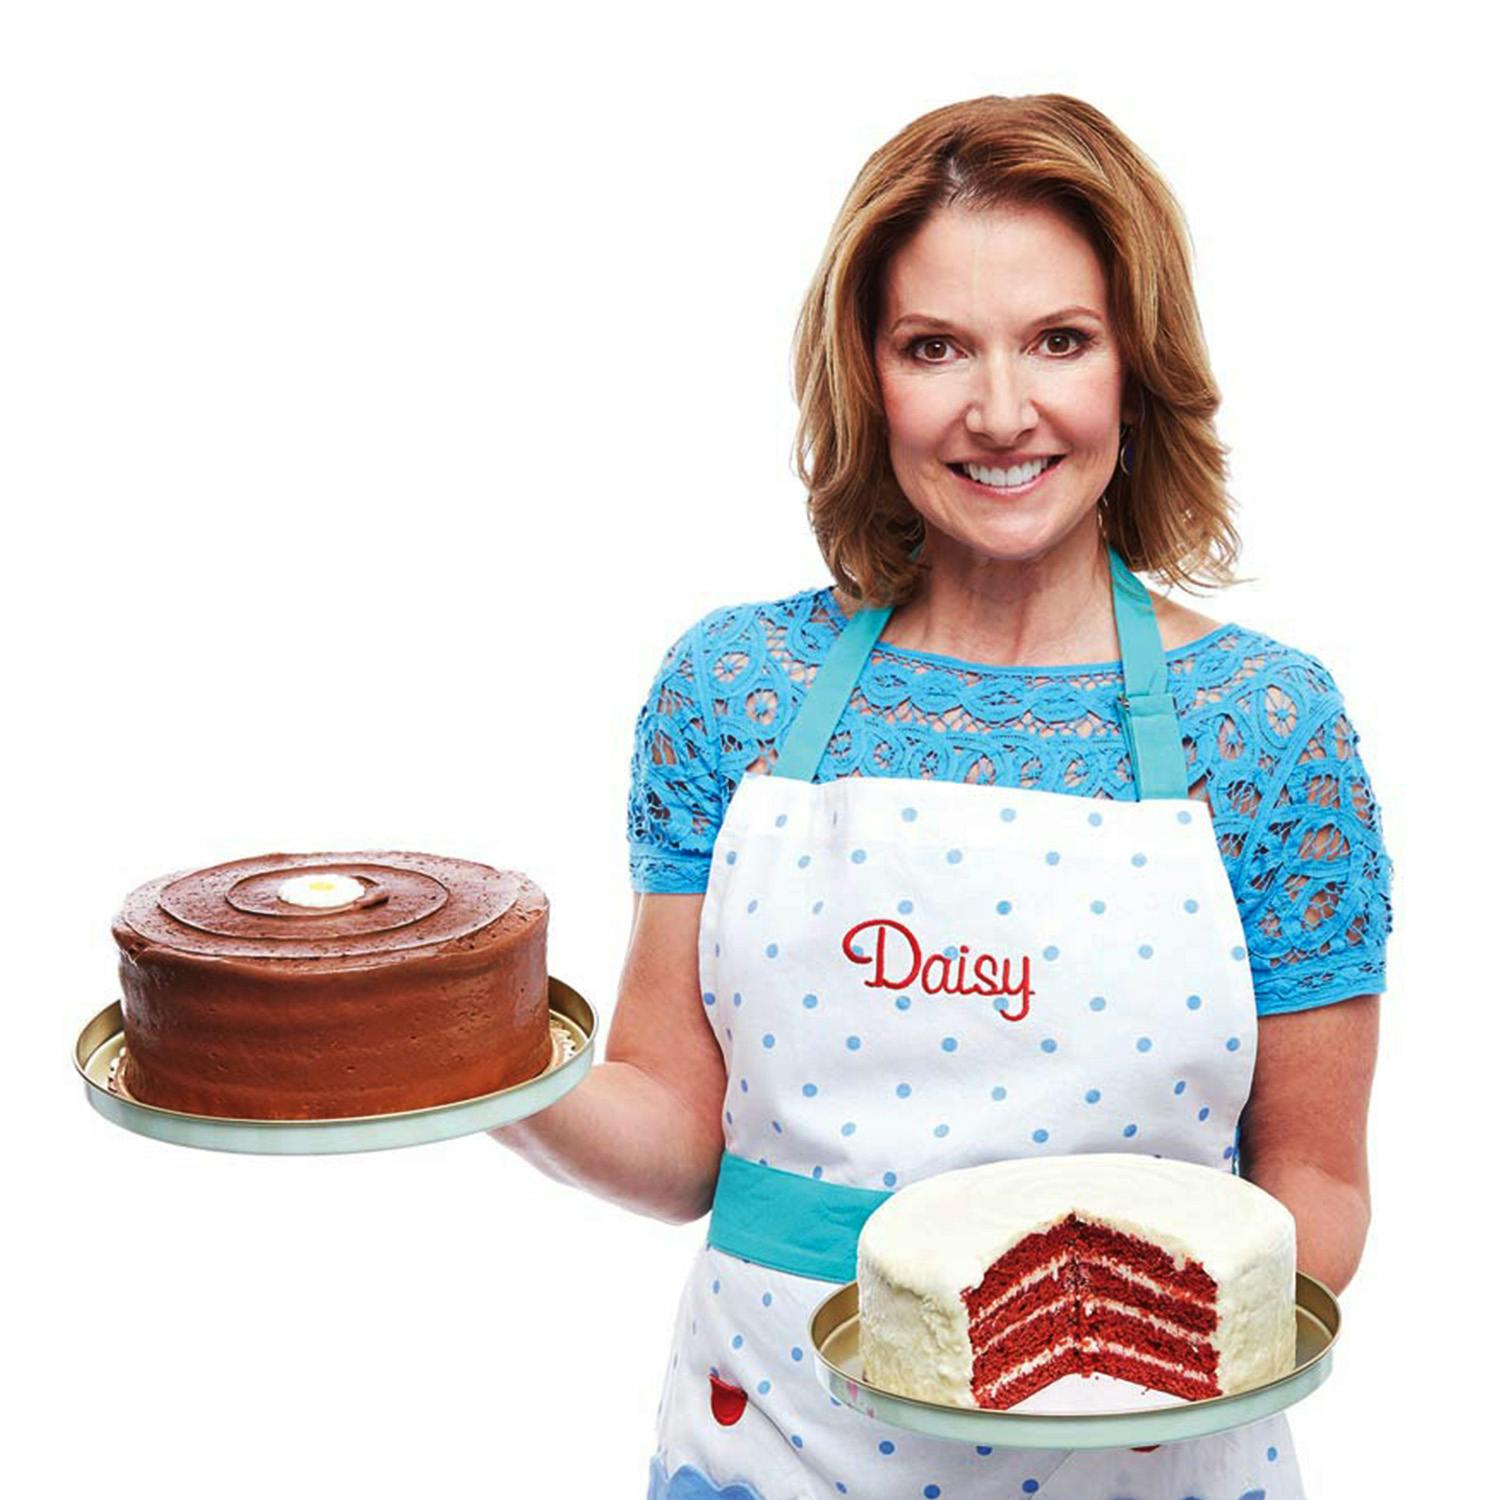 Daisy cakes net worth 2022